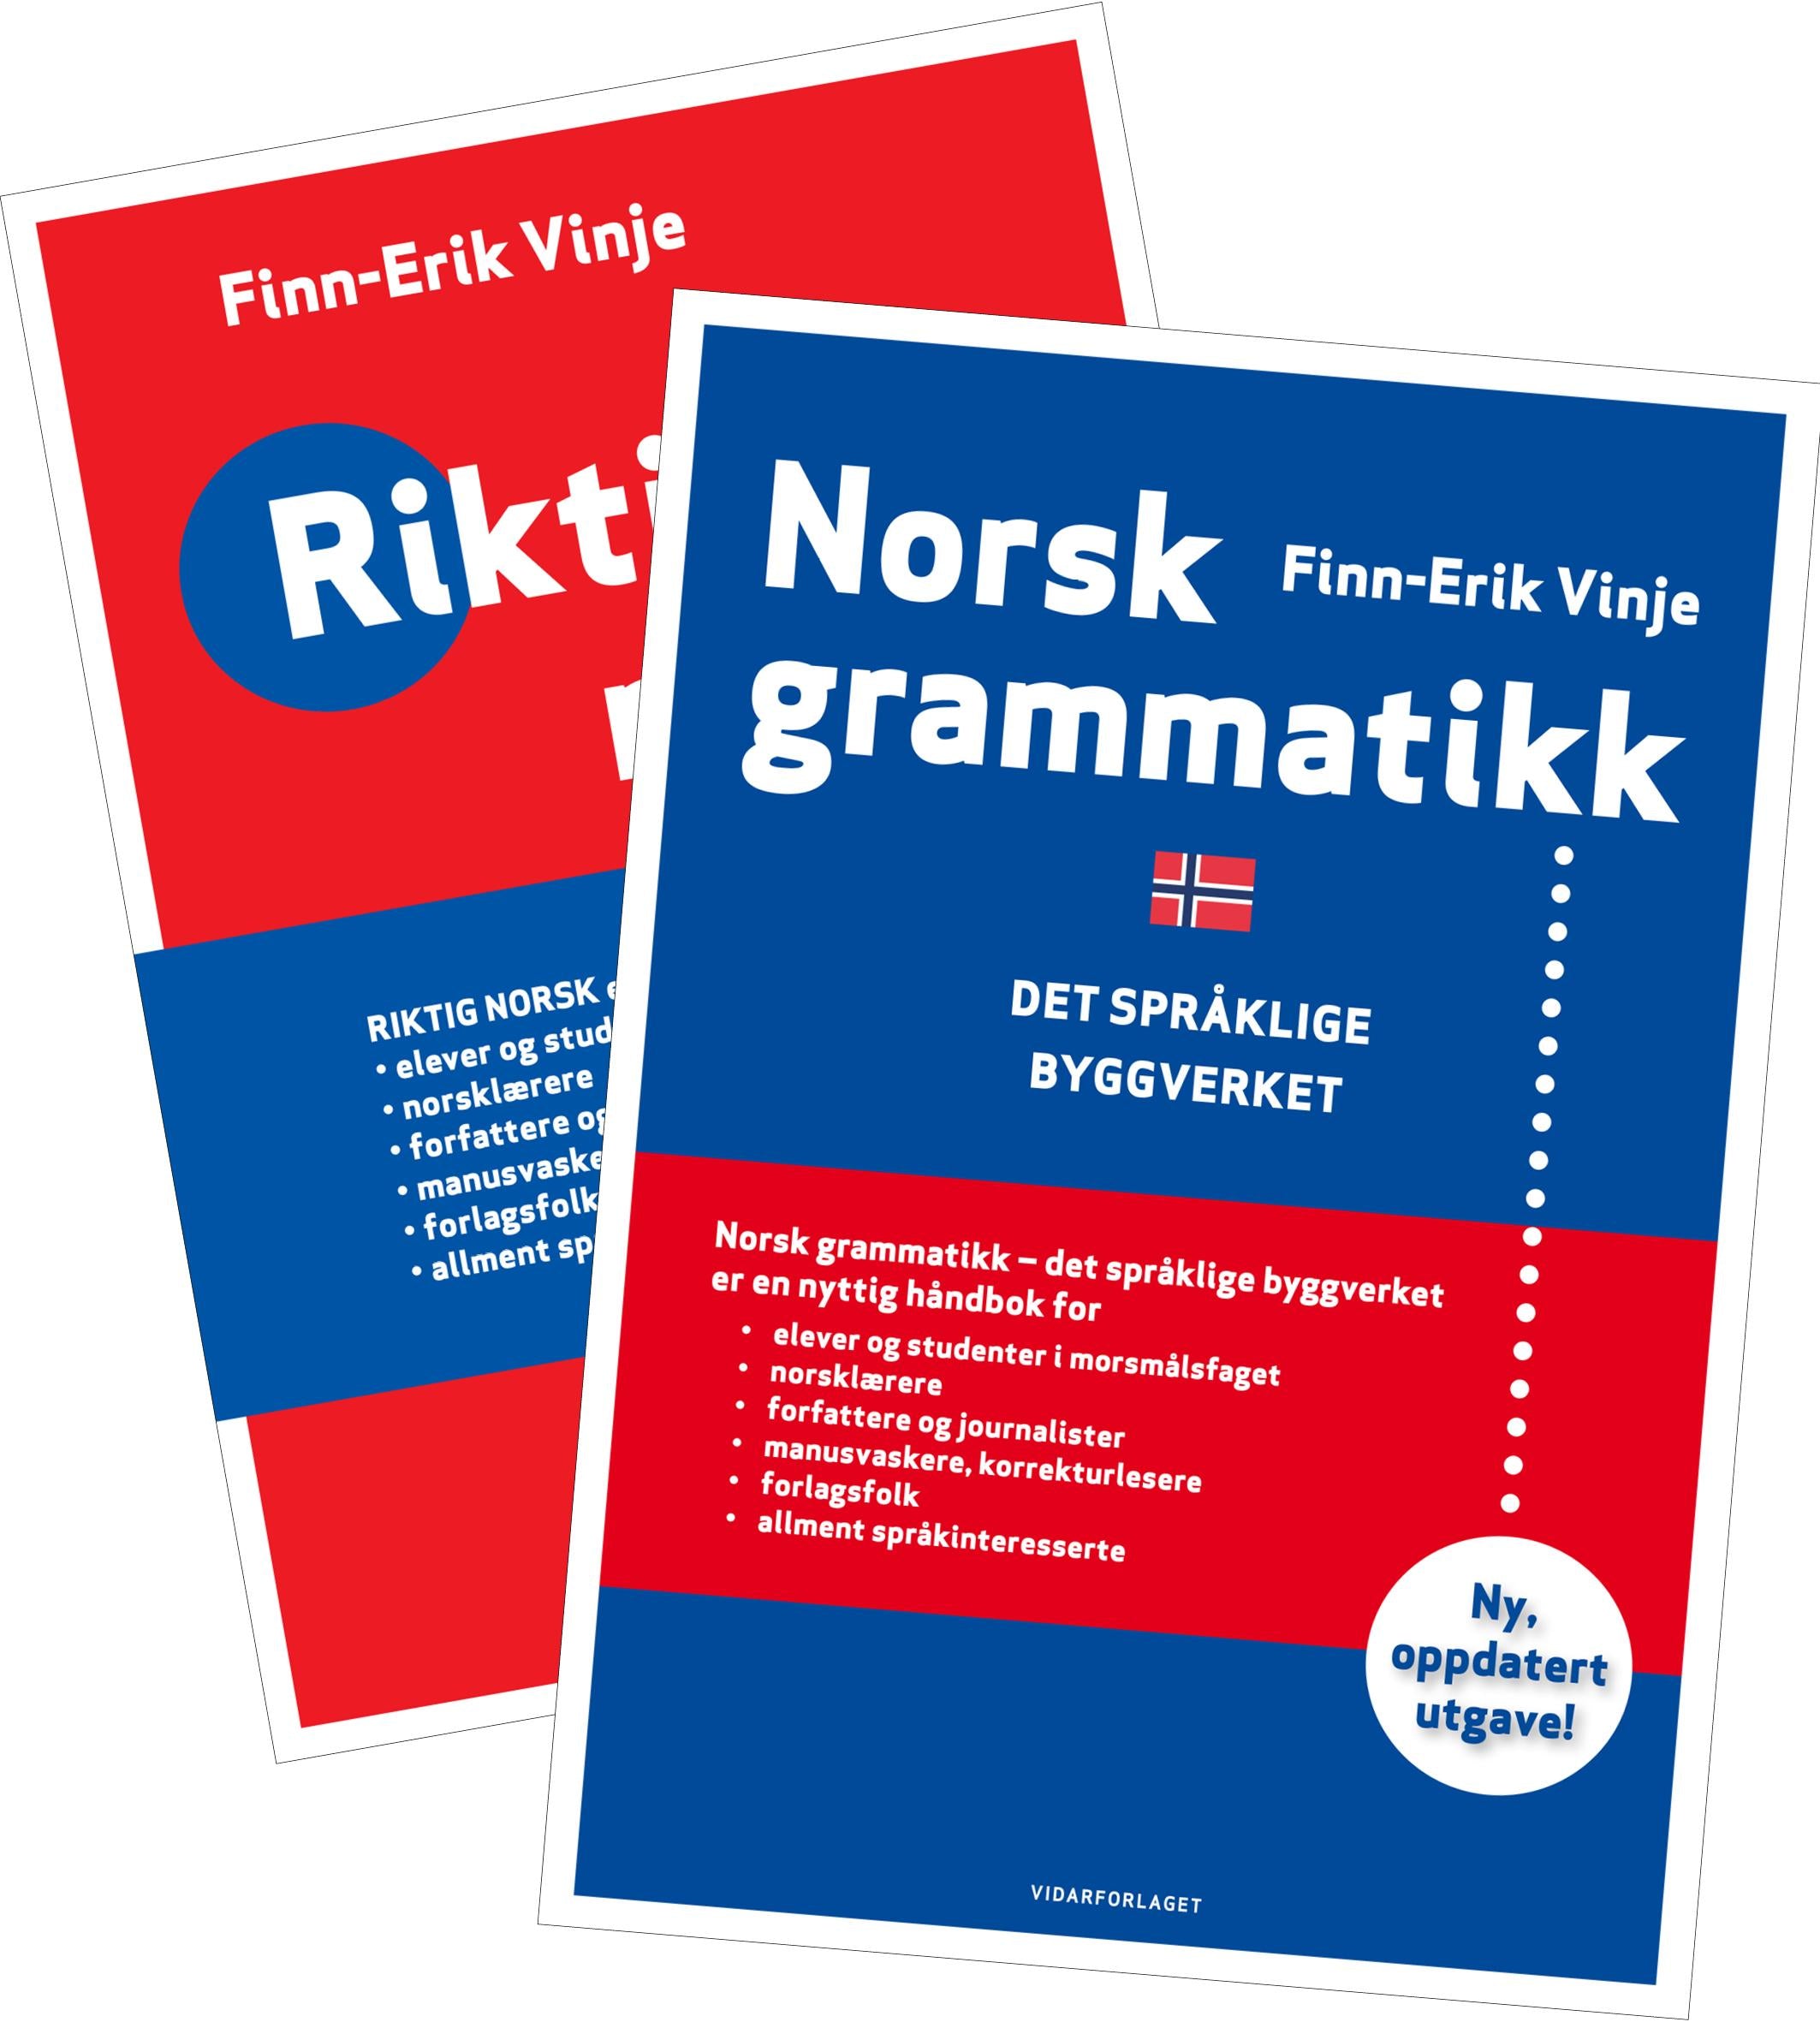 Vinje-pakke: Riktig norsk + Norsk grammatikk